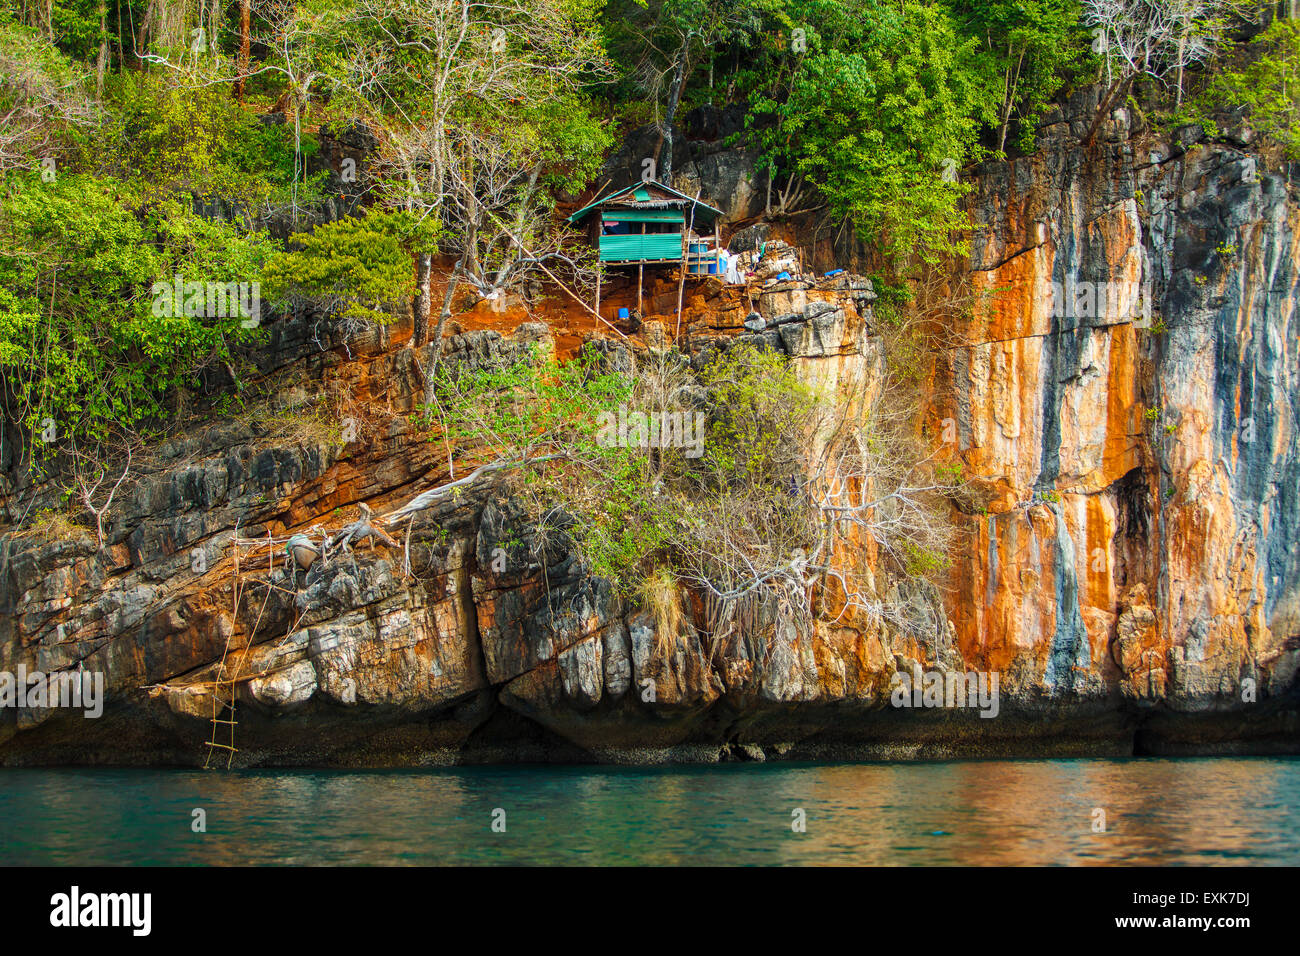 Rock-Tropeninsel mit alten Haus und grünen Steinen am tiefblauen Meer Philippinen Boracay Sommerinsel Stockfoto